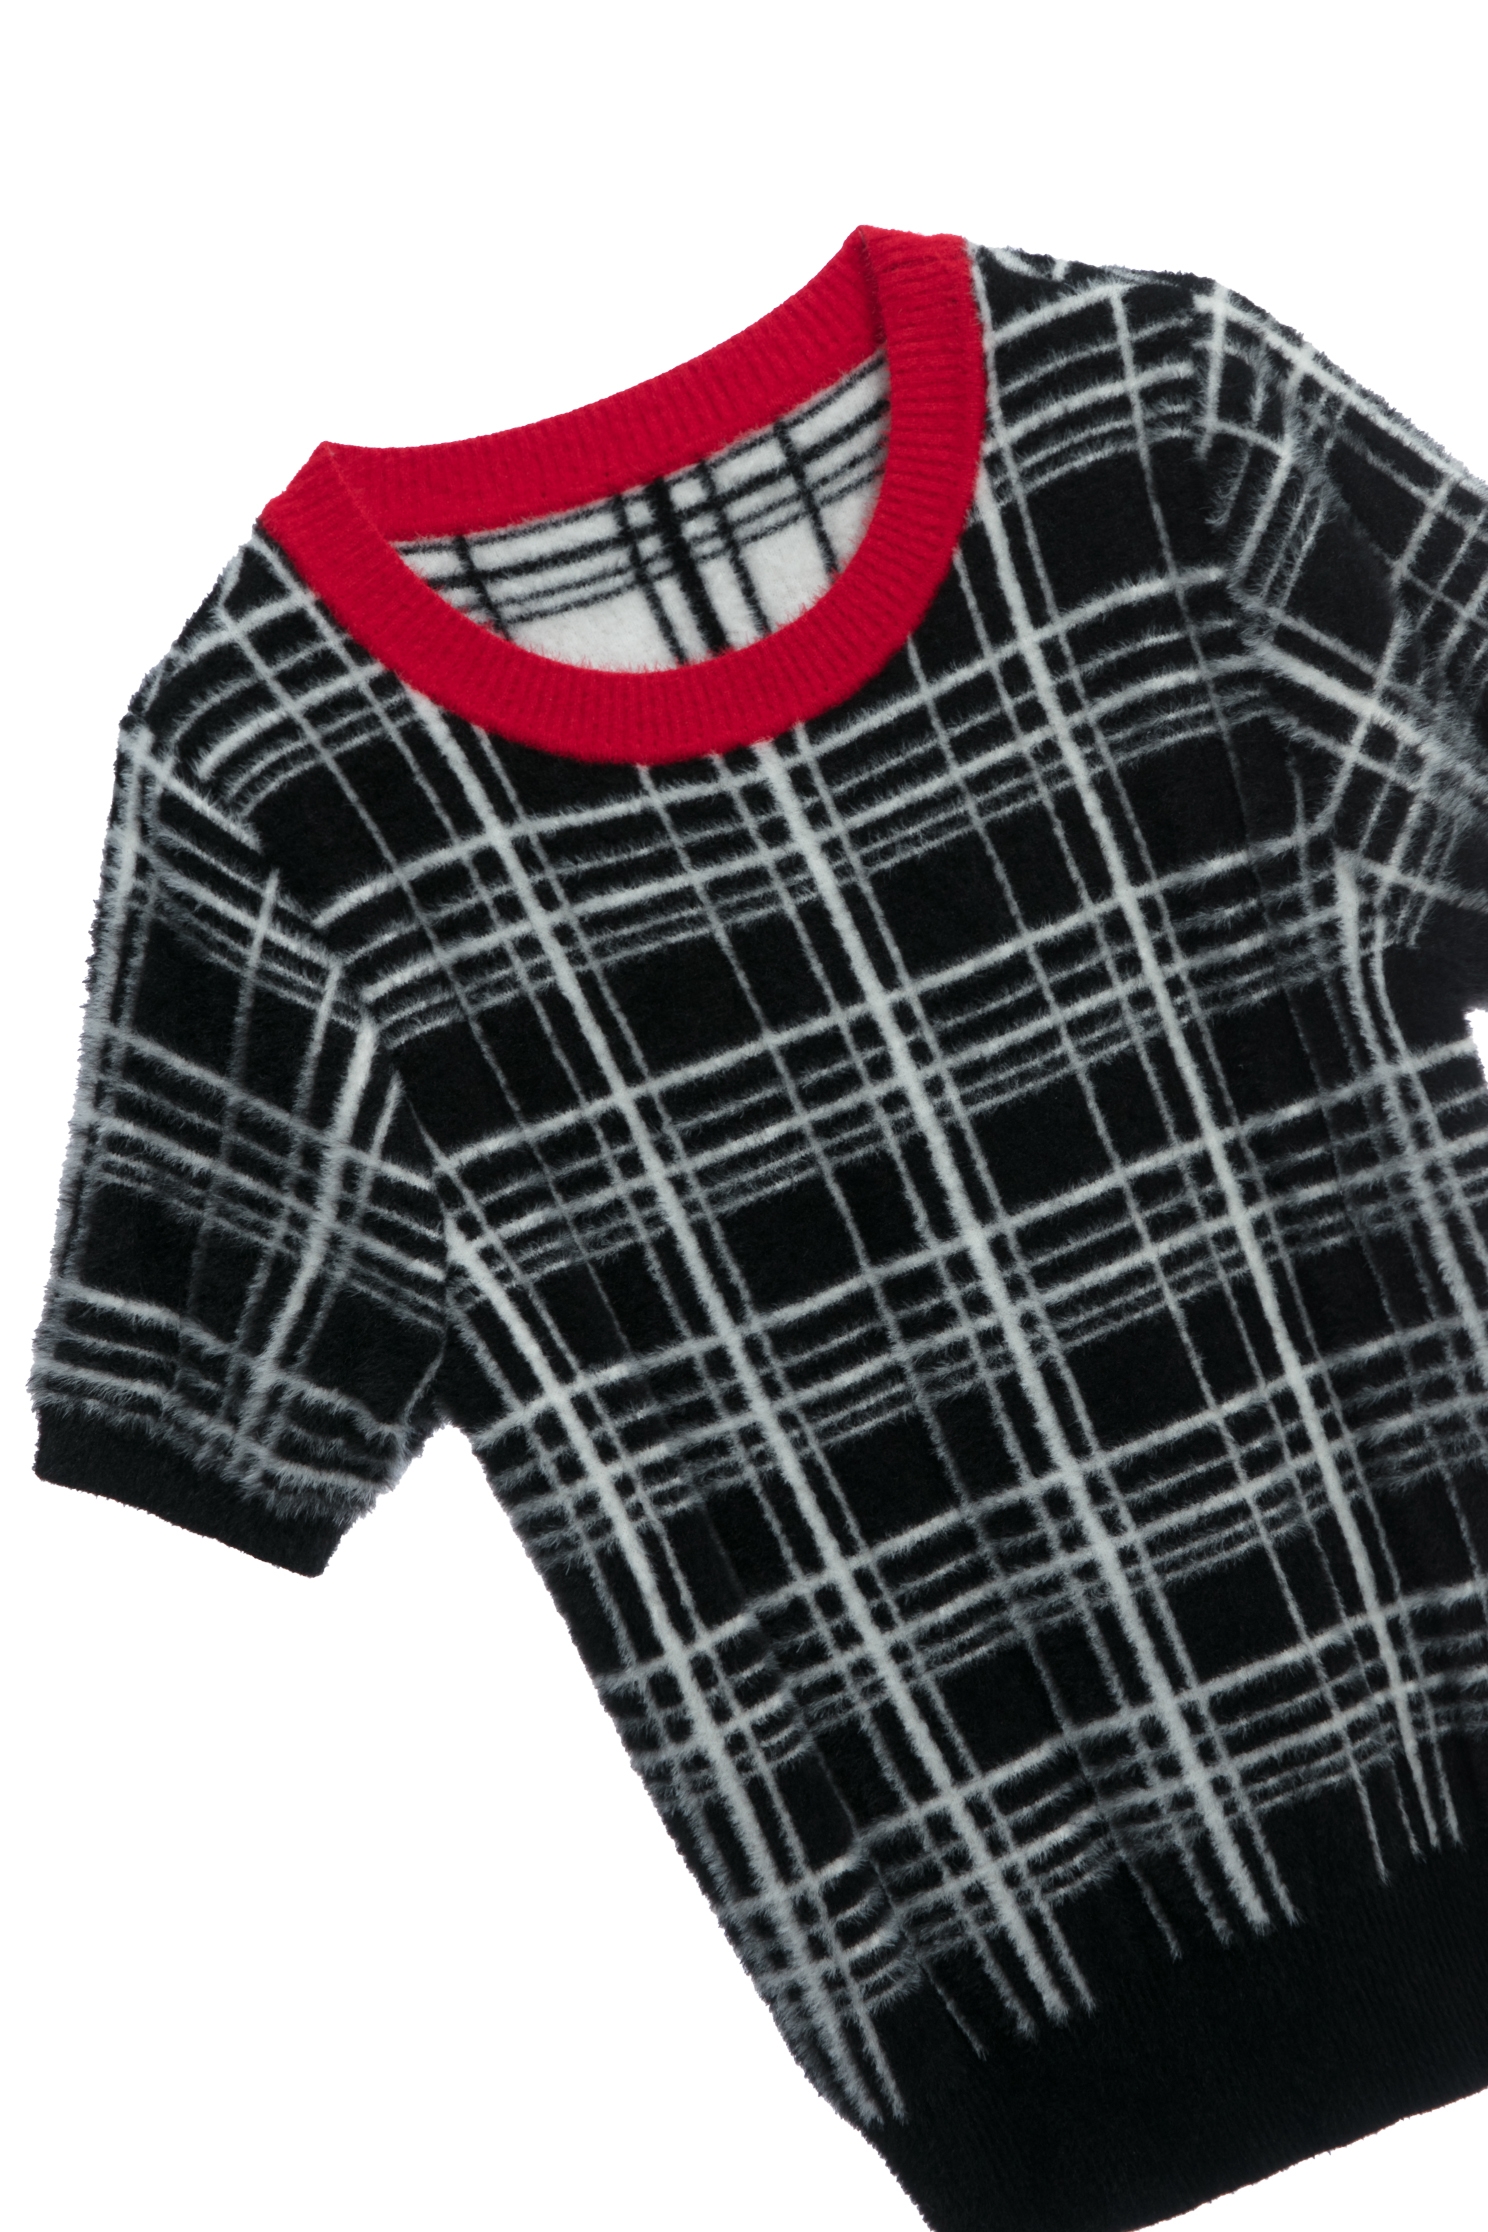 紅邊經典格紋短袖針織上衣紅邊經典格紋短袖針織上衣,上衣,格紋,秋冬穿搭,針織,針織上衣,針織衫